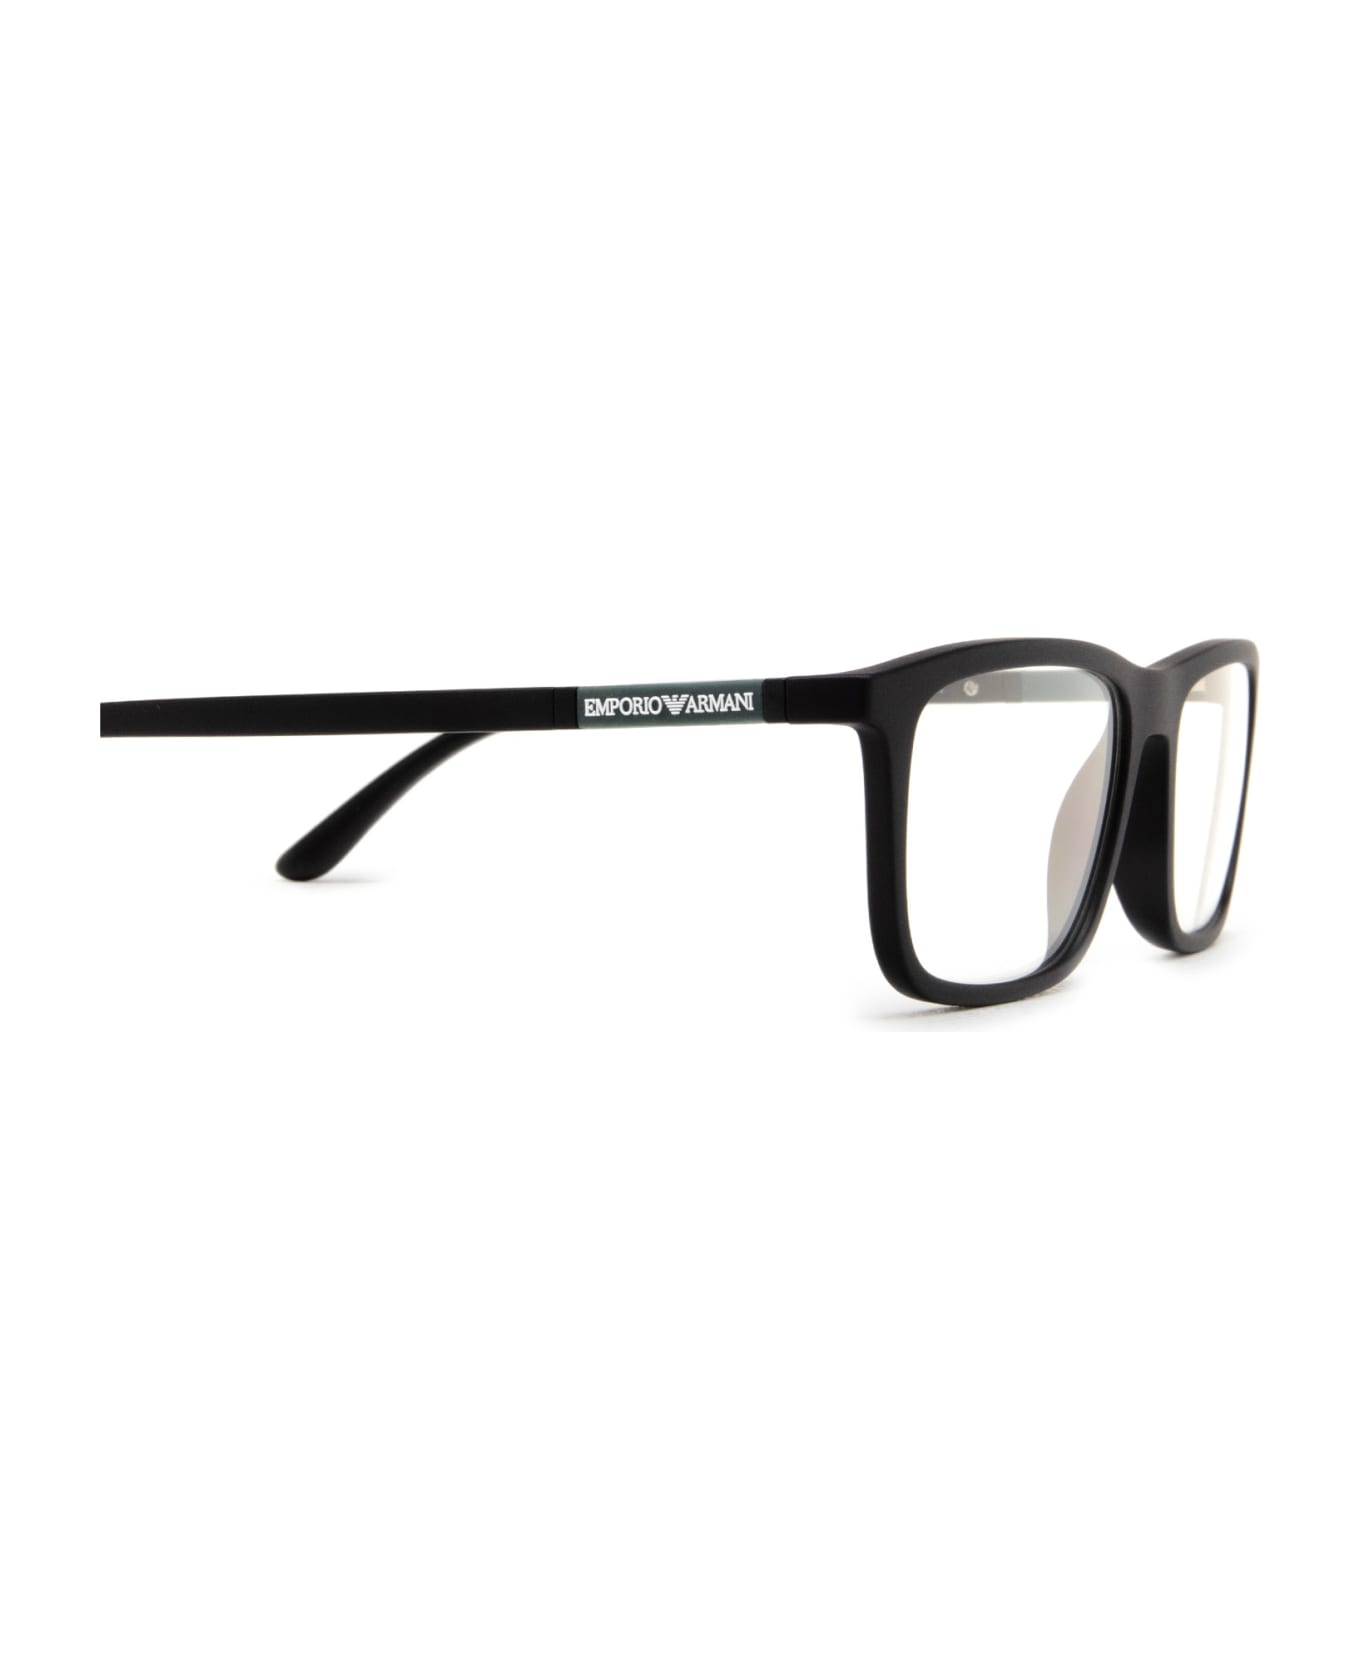 Emporio Armani Ea4160 Matte Black Sunglasses - Matte Black